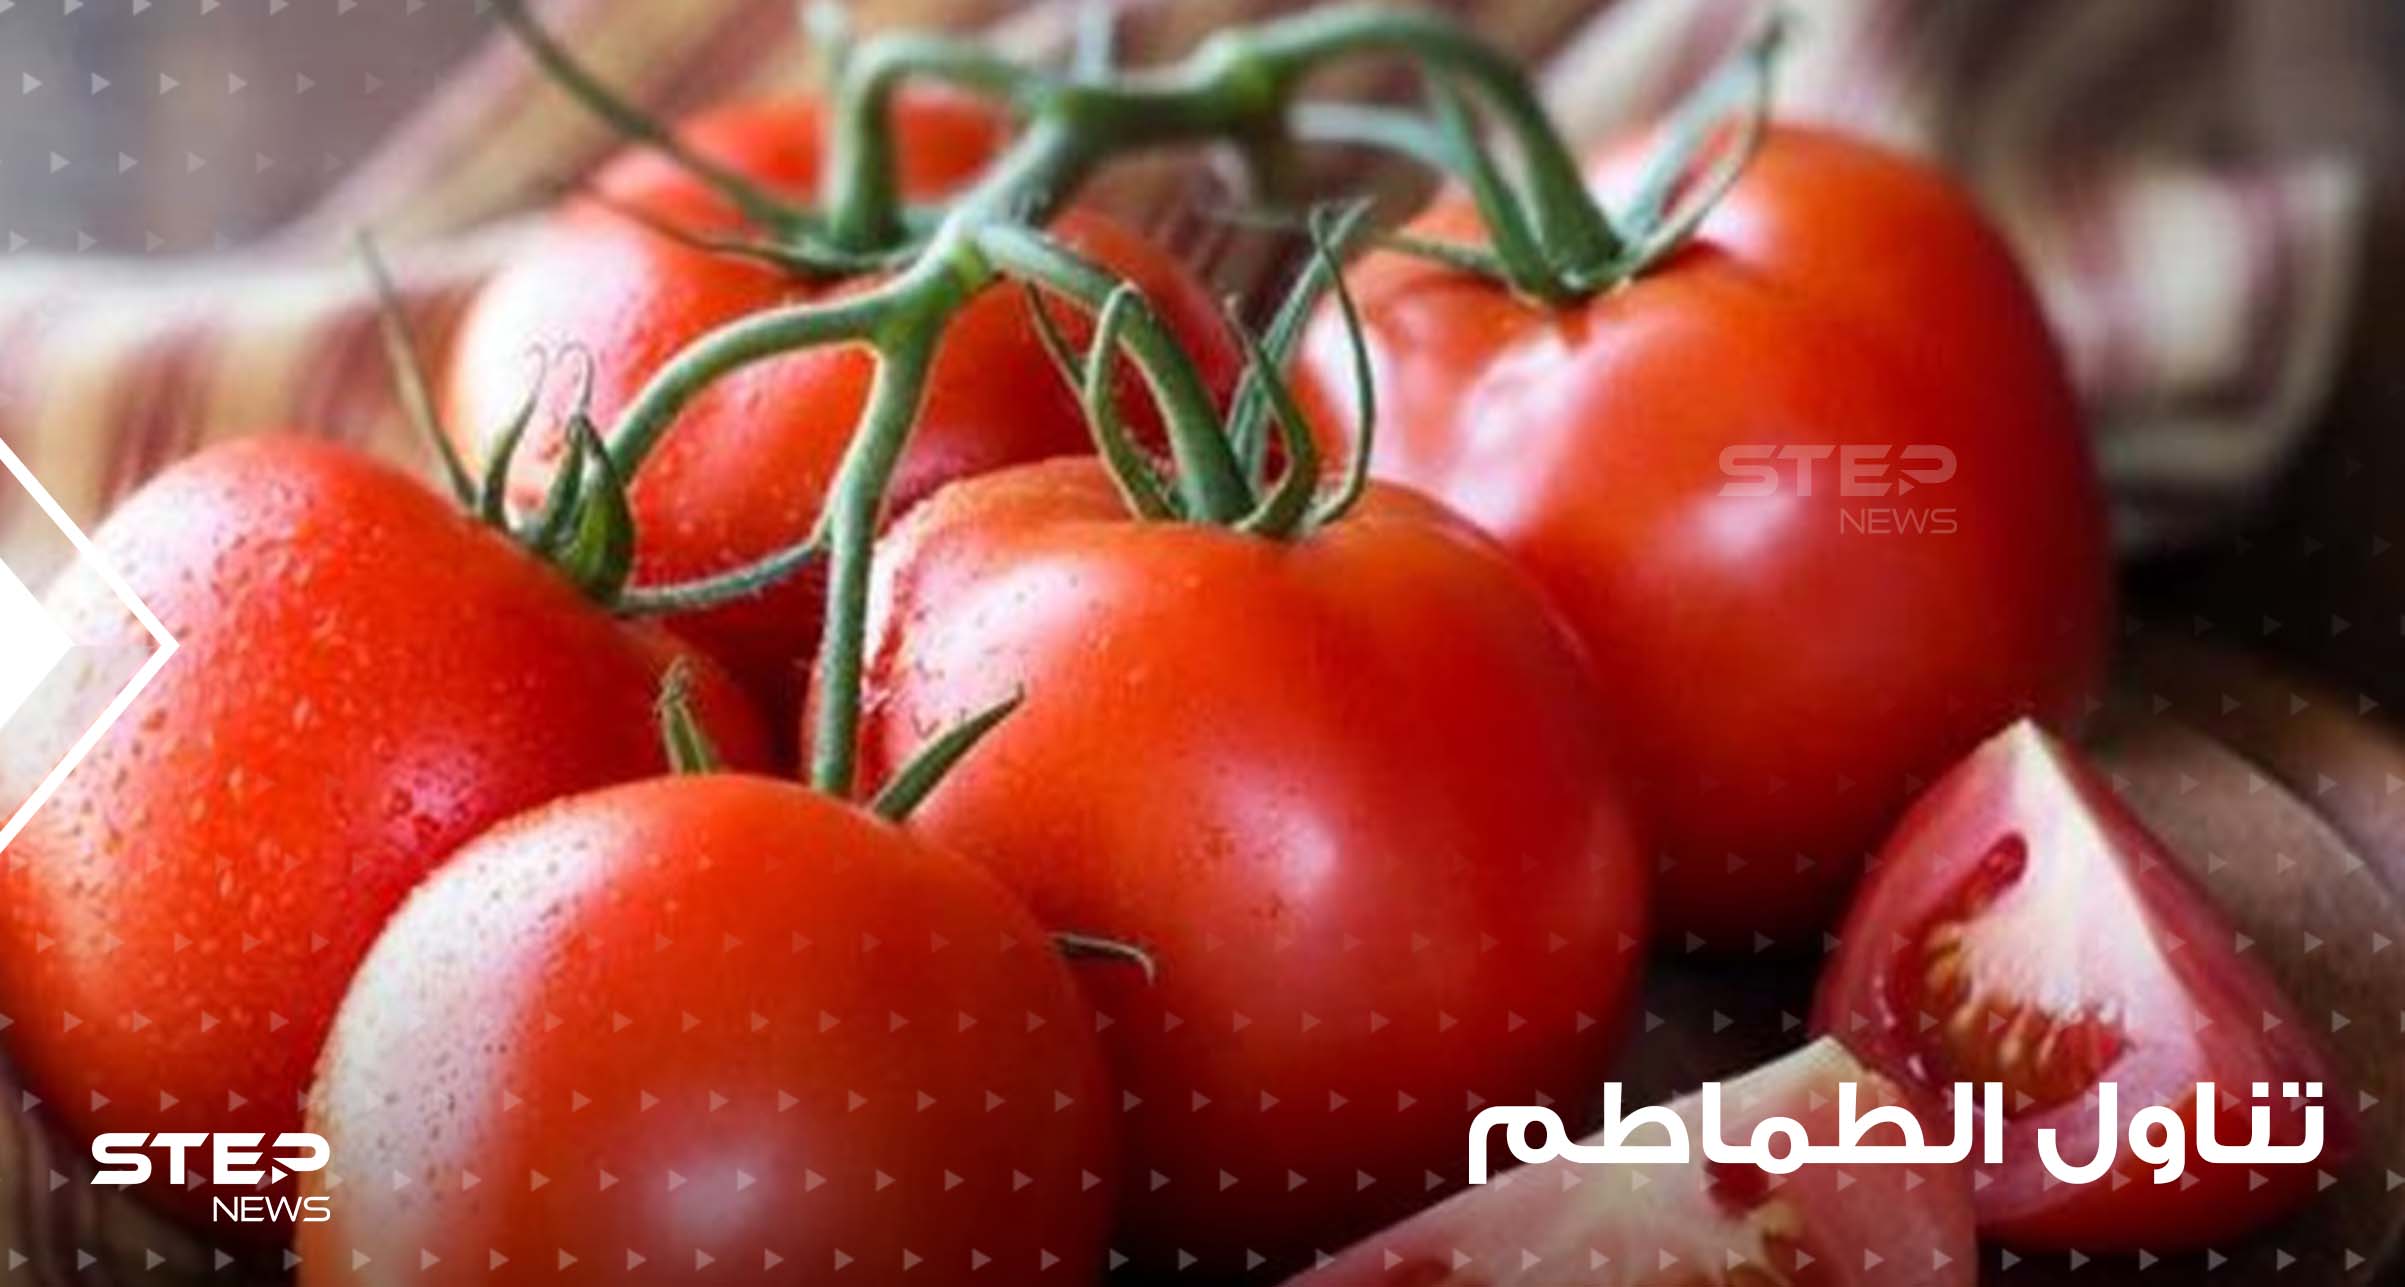 تشكل خطراً كبيراً على صحتهم.. 3 أصناف من البشر يمنع عليهم تناول الطماطم